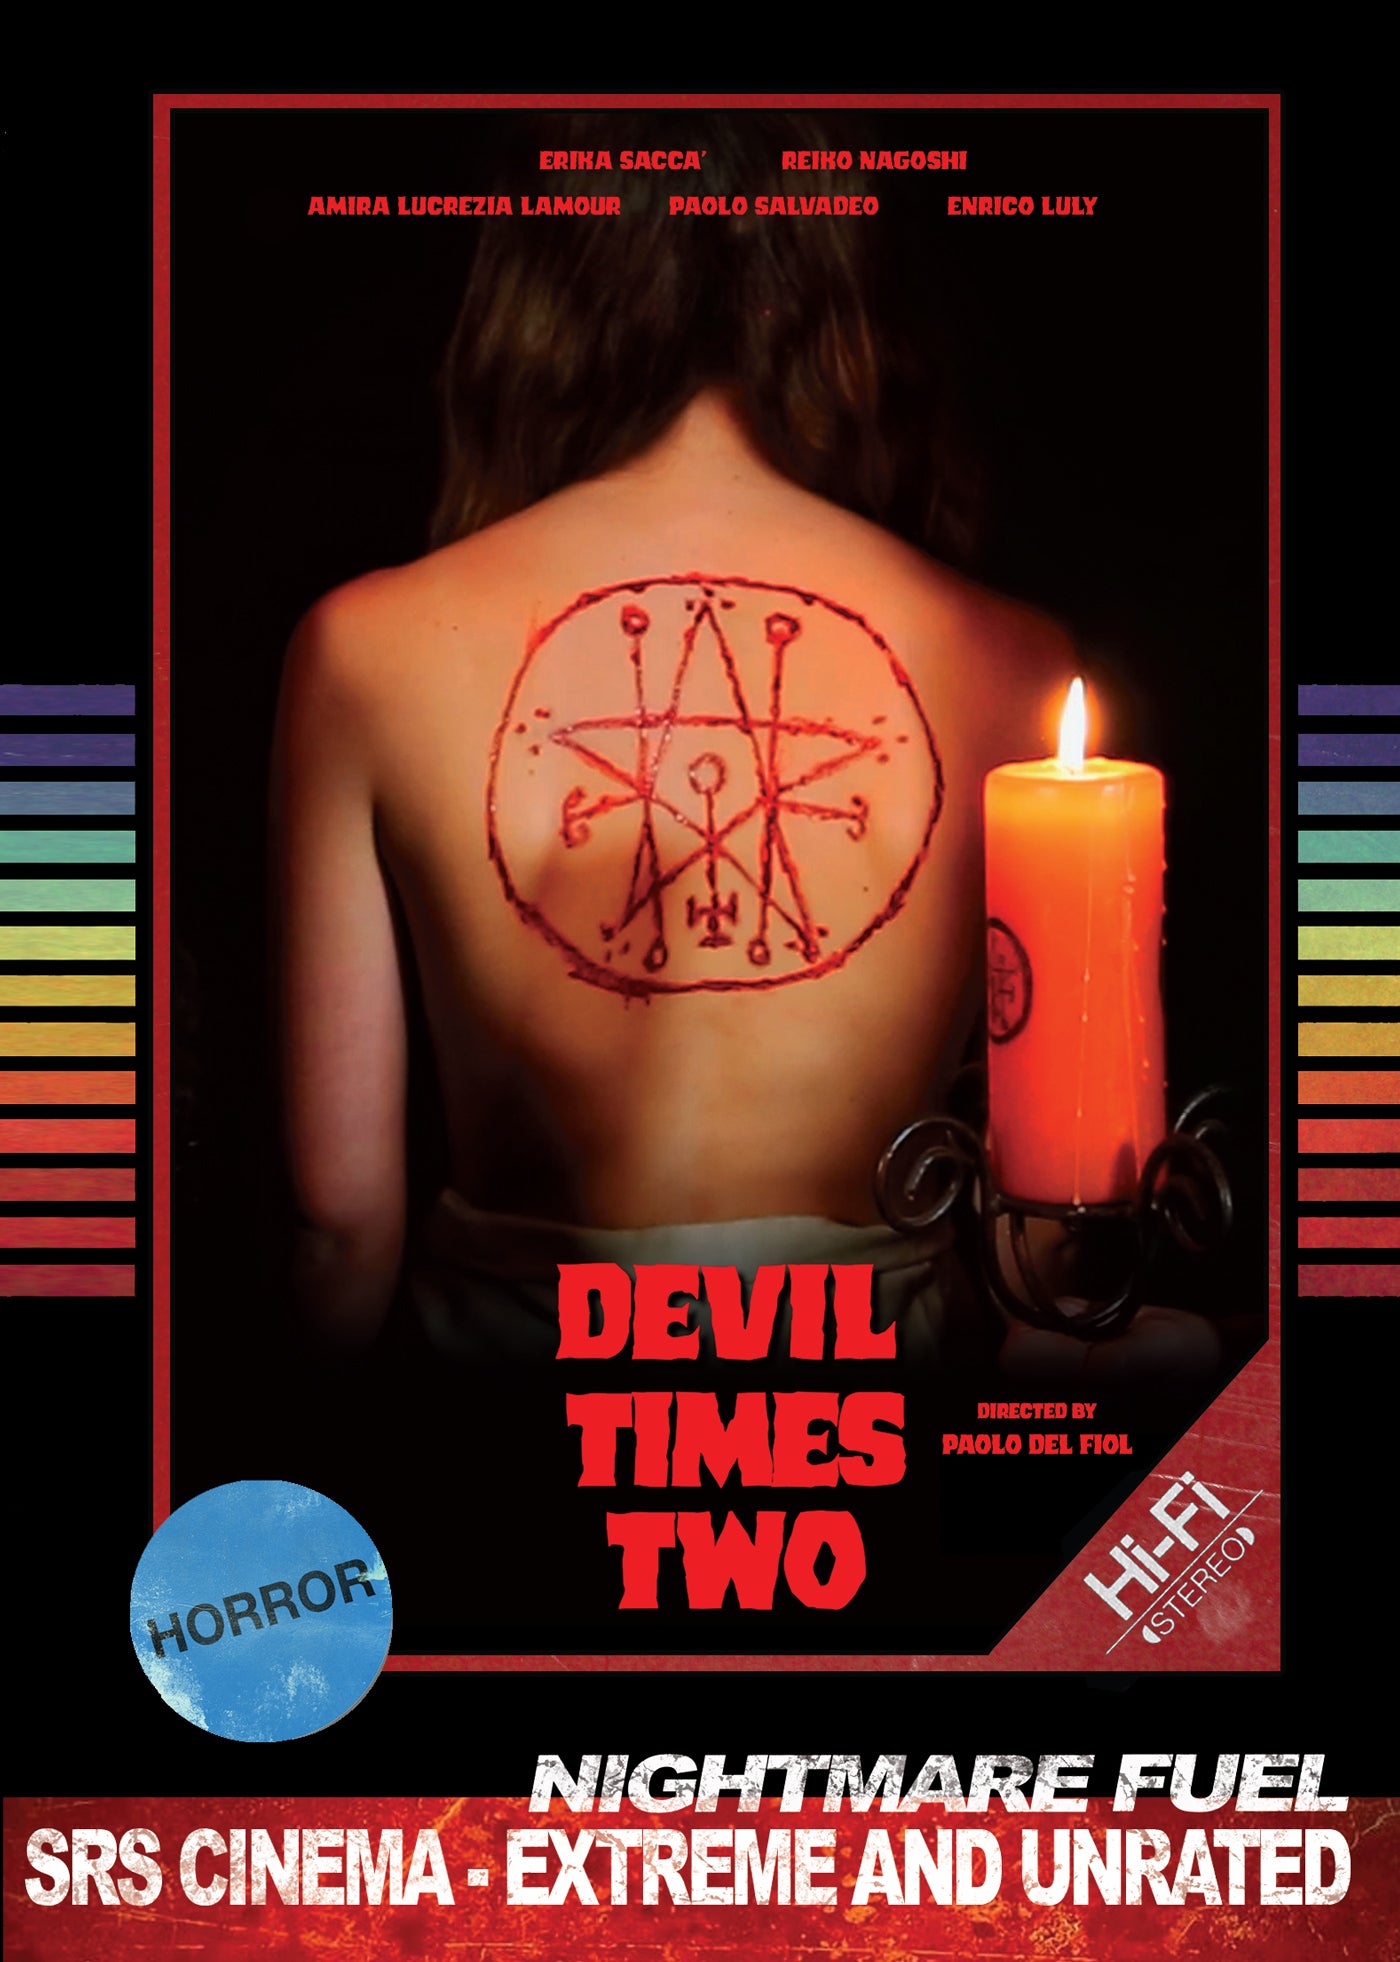 DEVIL TIMES TWO DVD